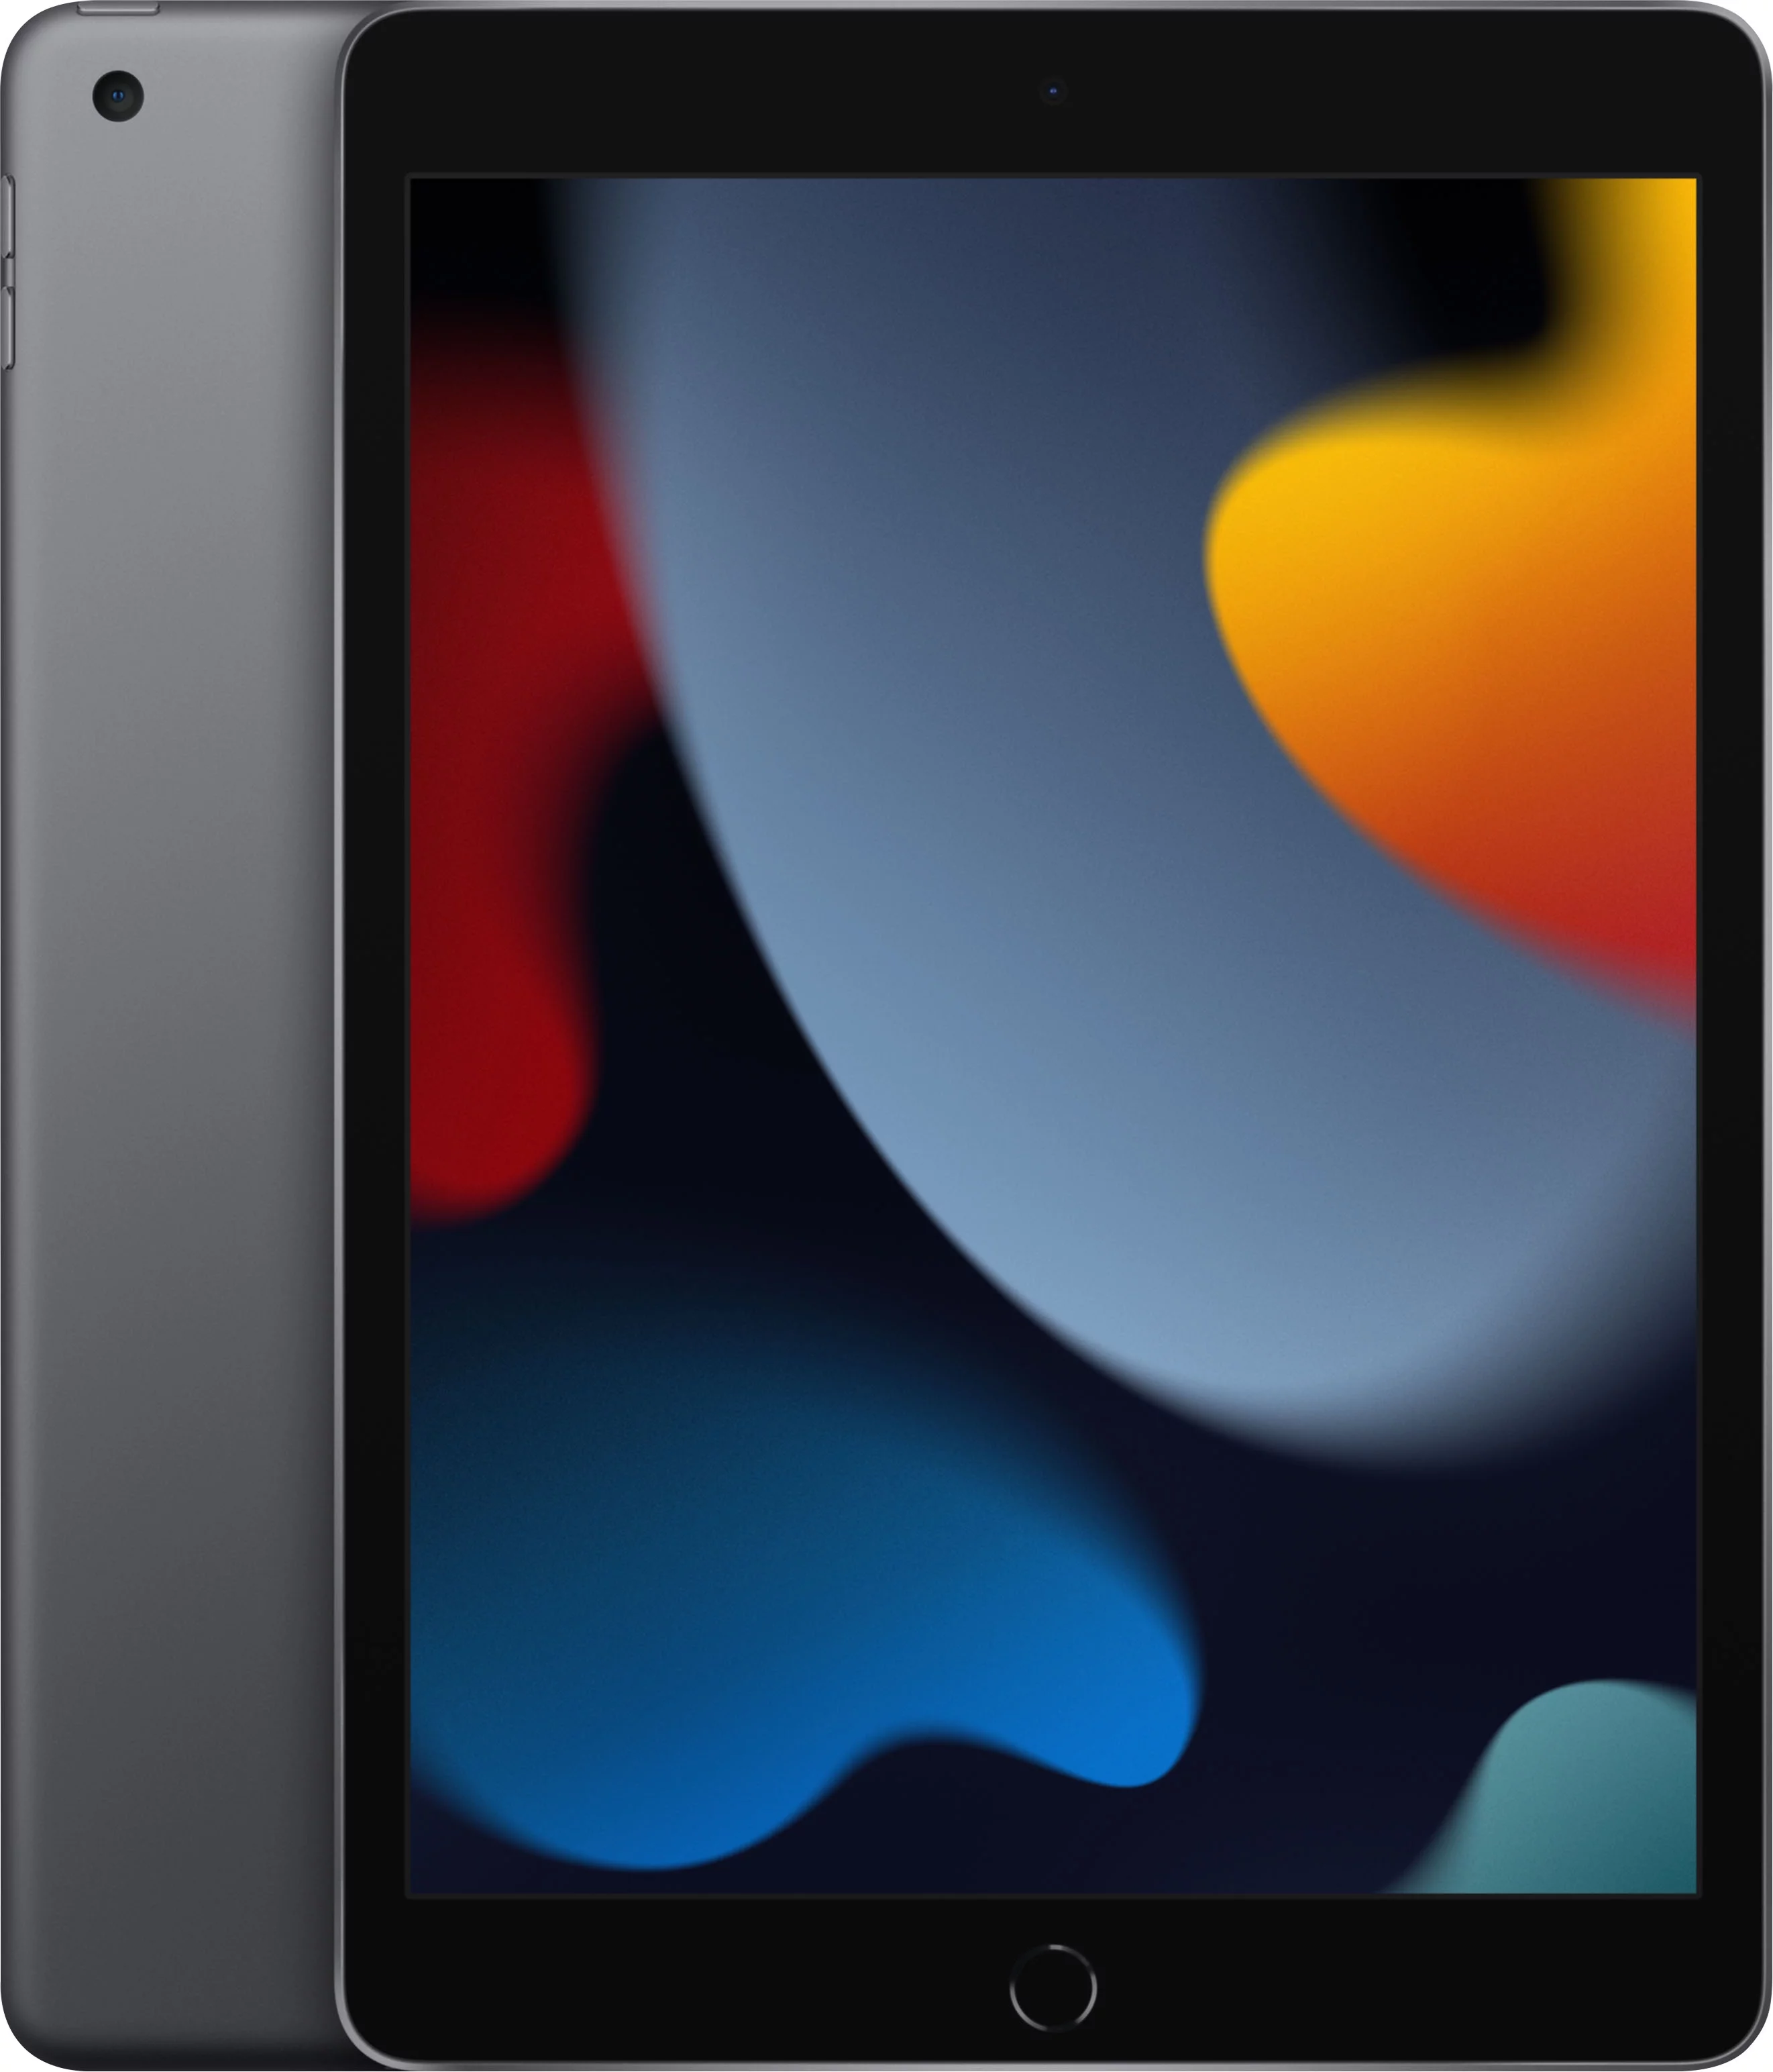 Restored Apple iPad 9th Gen 64GB Space Gray Wi-Fi MK2K3LL/A (Refurbished)